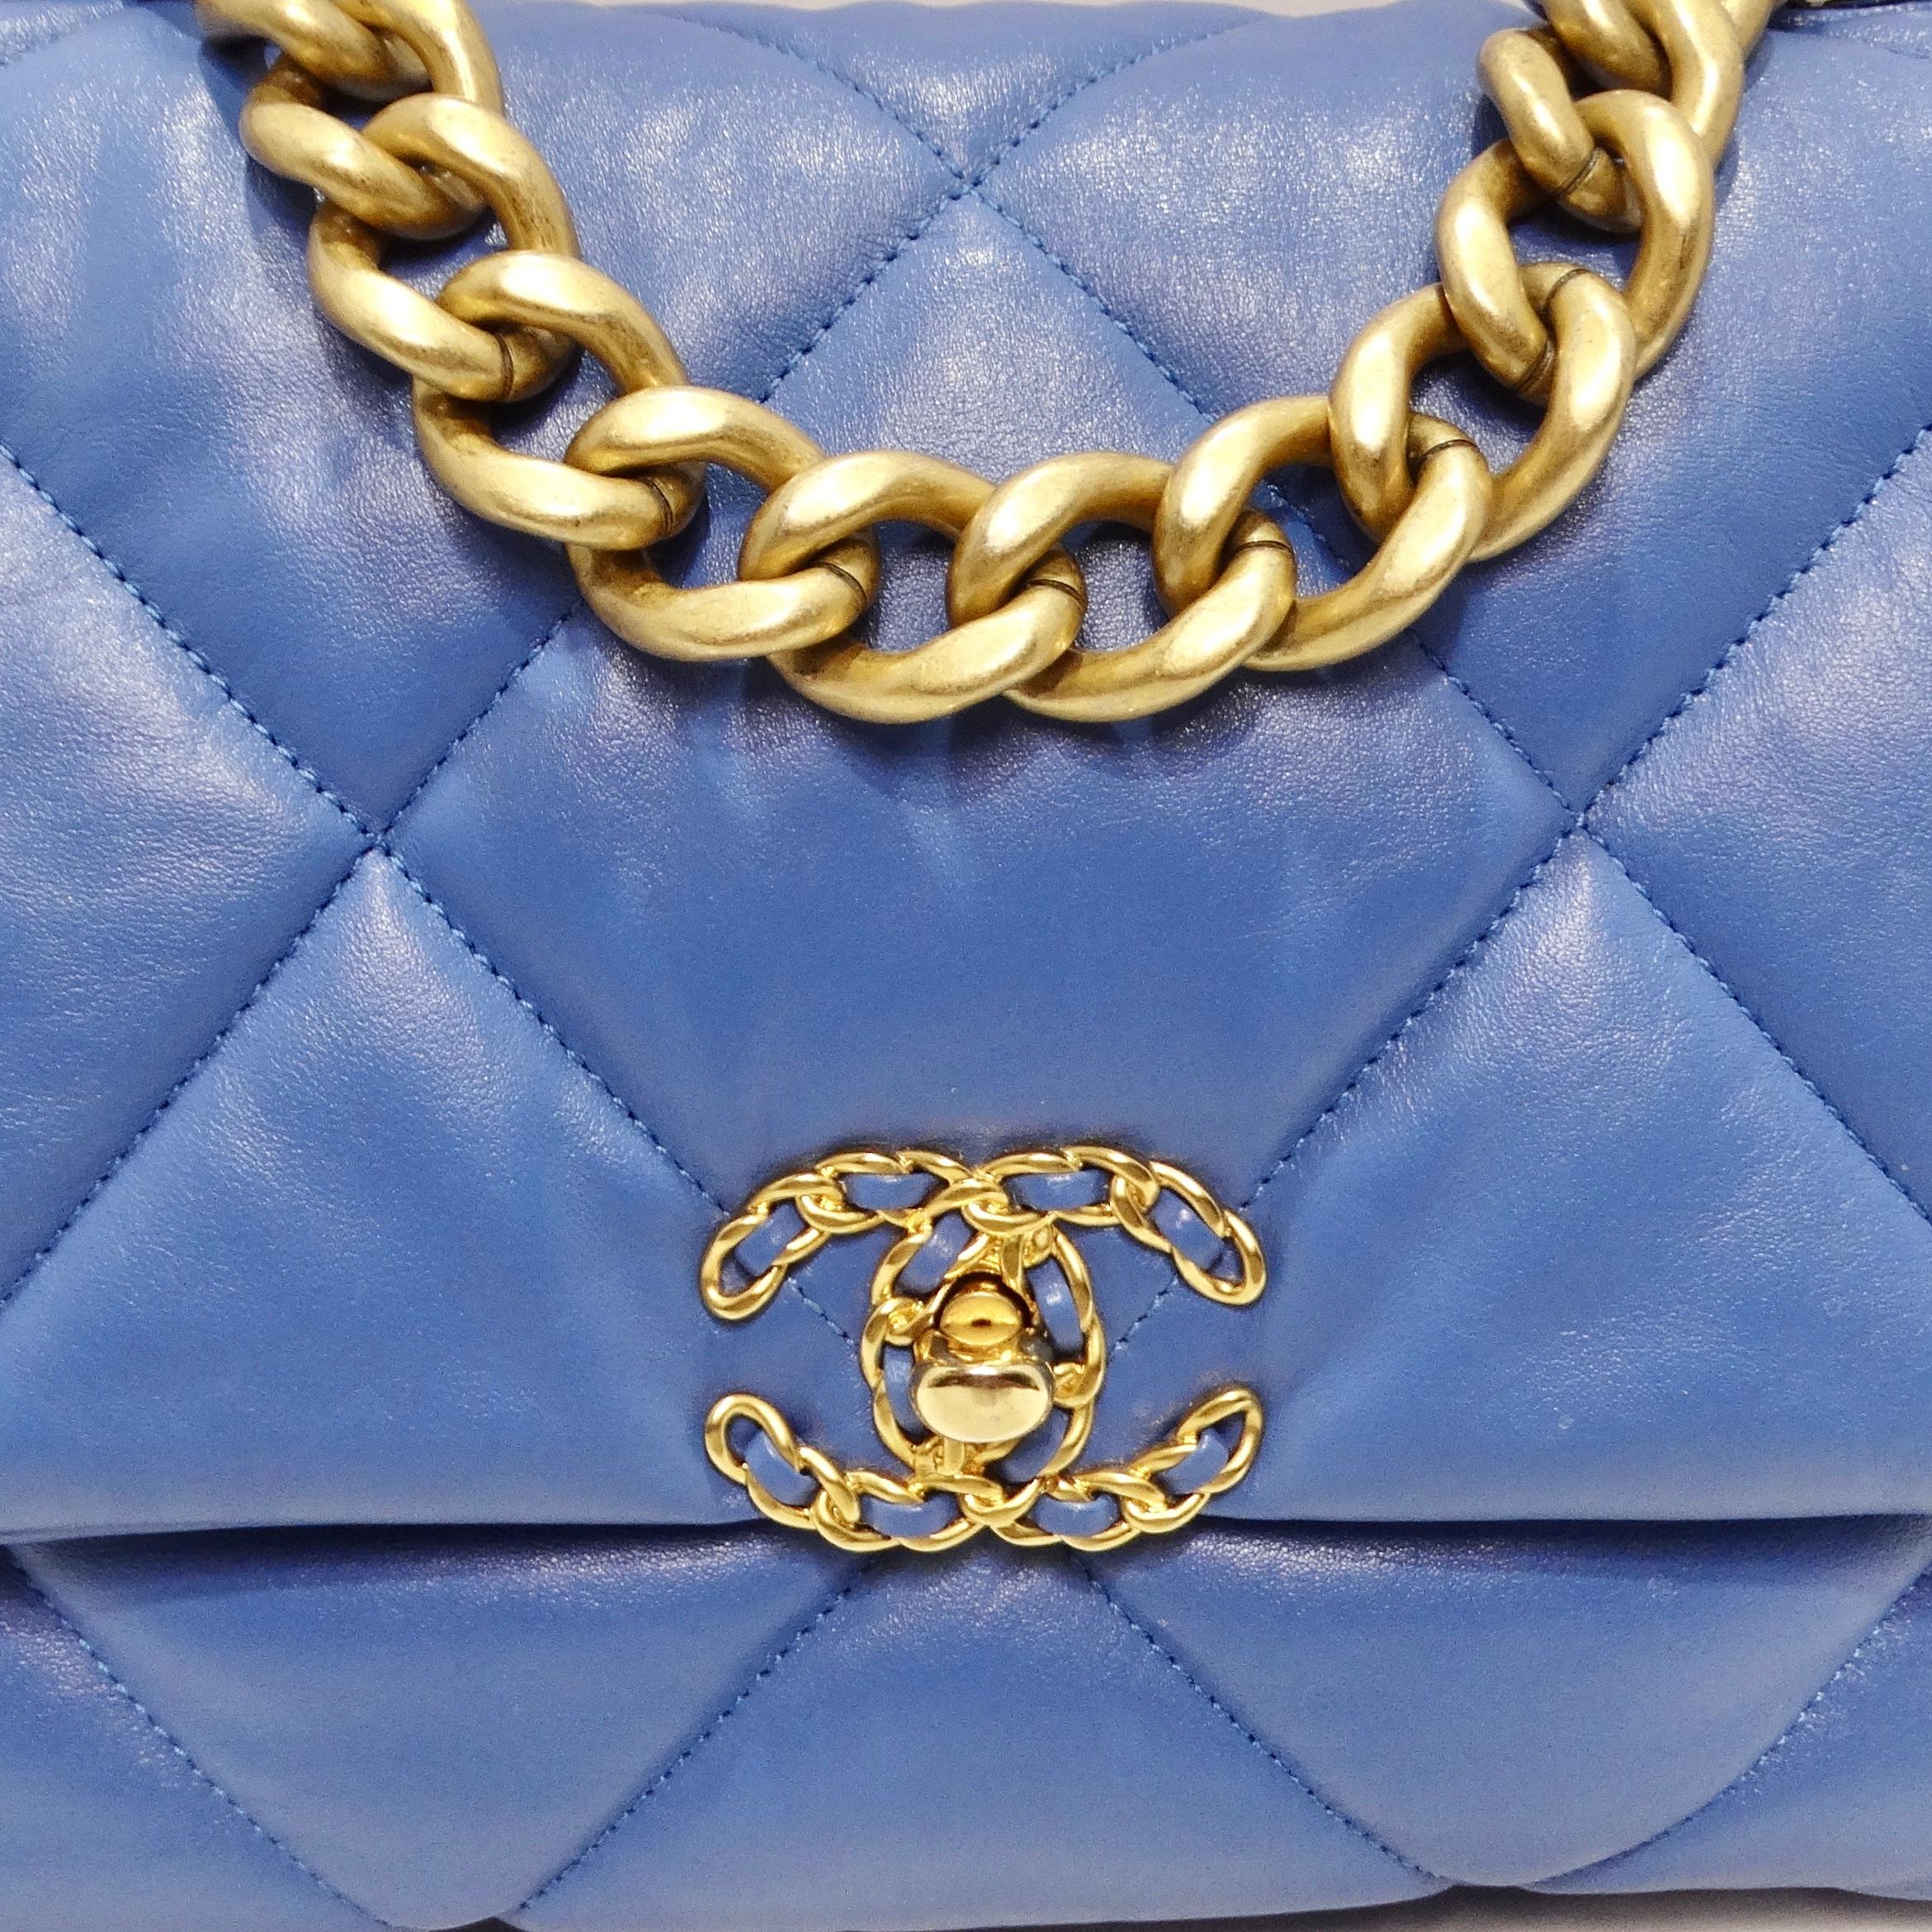 Élevez votre style avec le sac à rabat Chanel Lambskin Quilted Medium 19 en bleu, un chef-d'œuvre authentique qui combine harmonieusement le cuir d'agneau matelassé signature de Chanel avec d'élégantes ferrures en or et en ruthénium. Ce sac est une